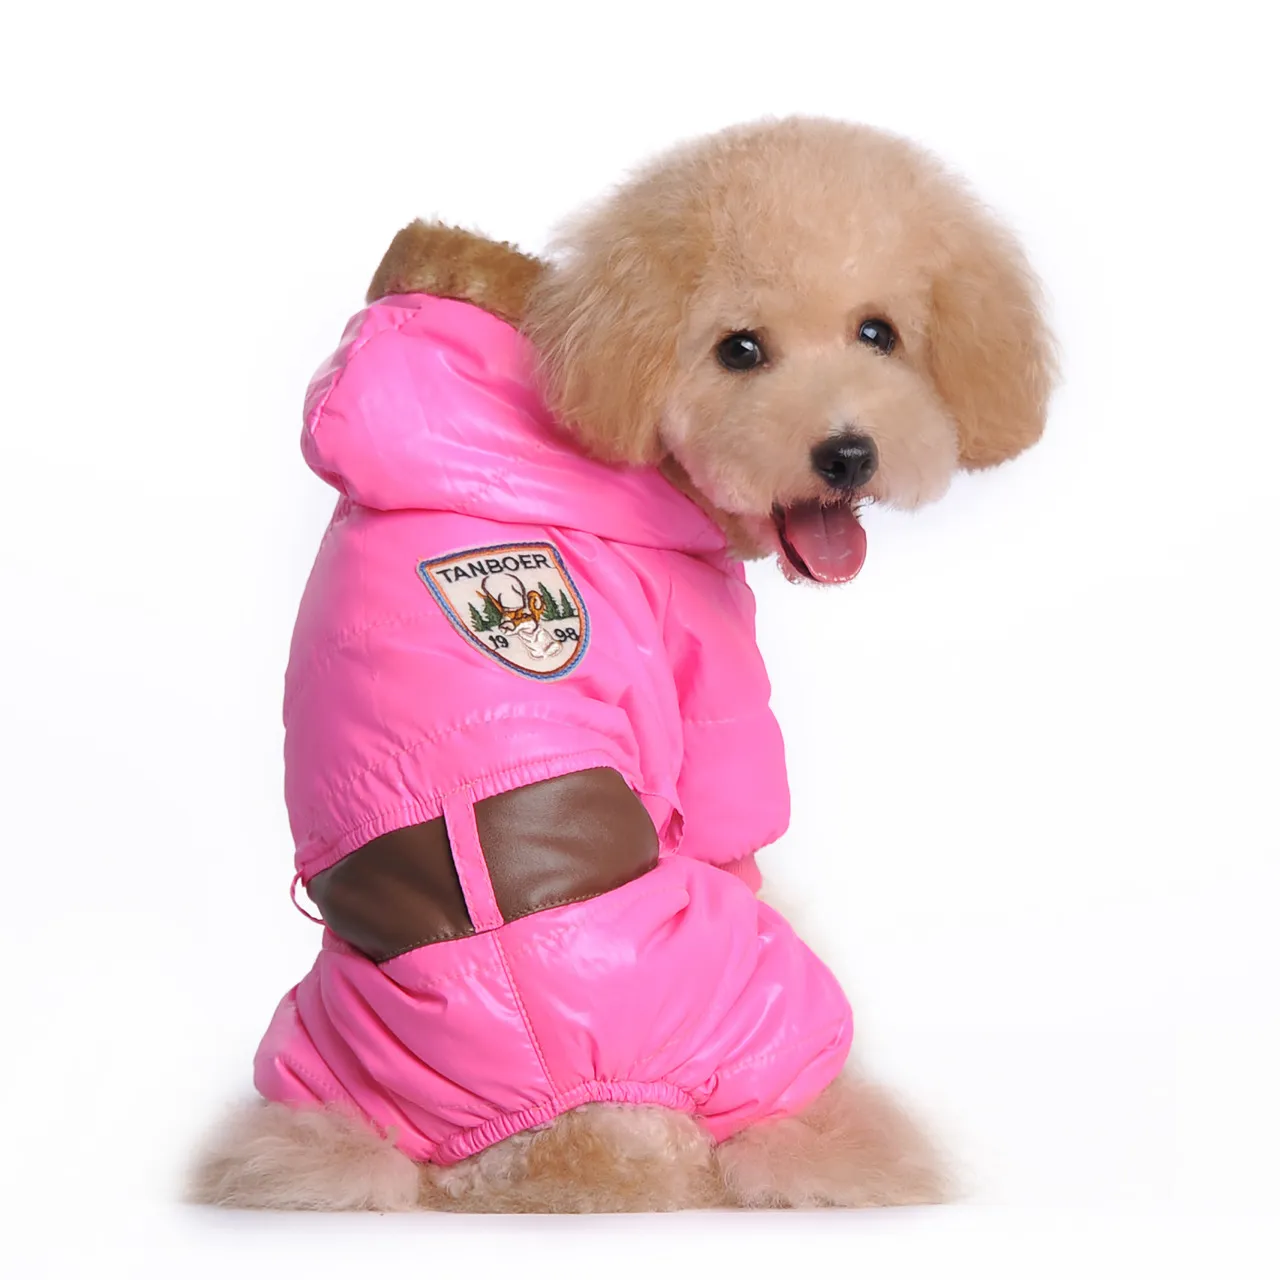 패션 새 개 의류 씰 인쇄 개 옷 PET039S 가을 겨울 재킷 코트 핑크와 파란색 5959307